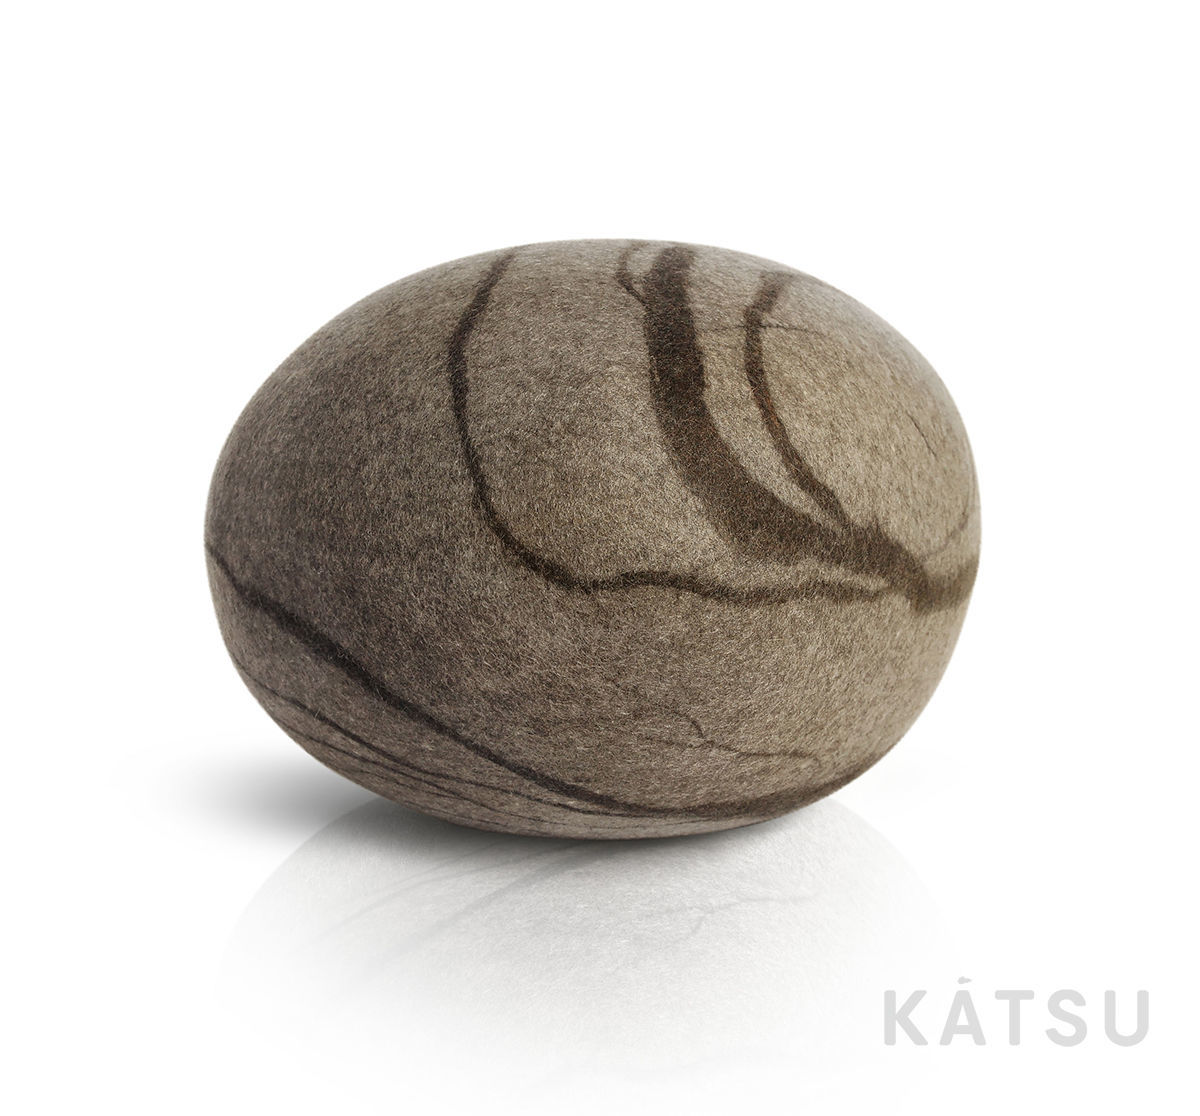 Katsu камни пуфы